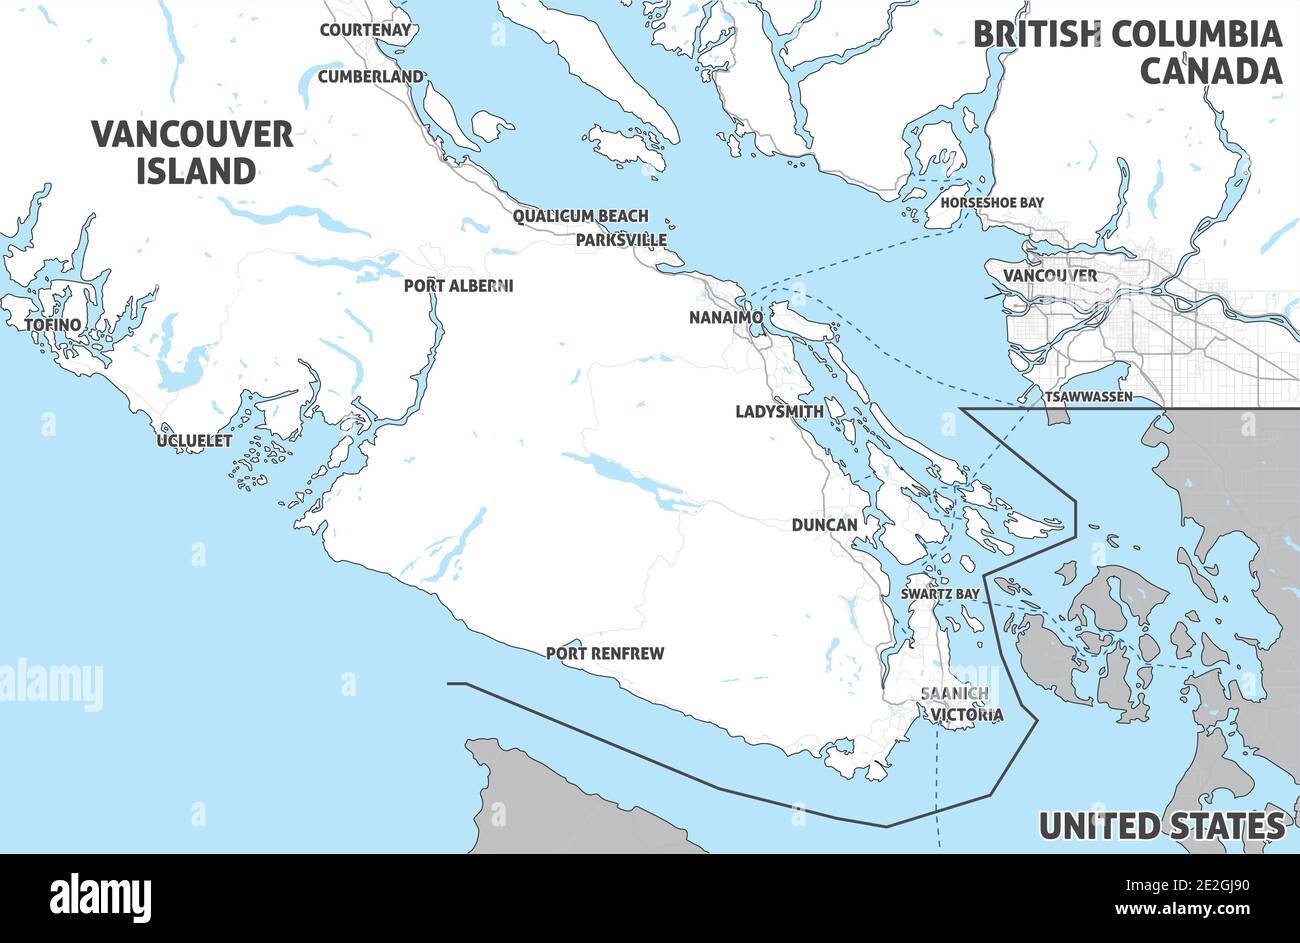 Carte de l'île de Vancouver (Nanaimo, Victoria, Tofino) et du Grand Vancouver. Canada, Colombie-Britannique. Carte touristique. Carte simple avec peu de texte. Illustration de Vecteur